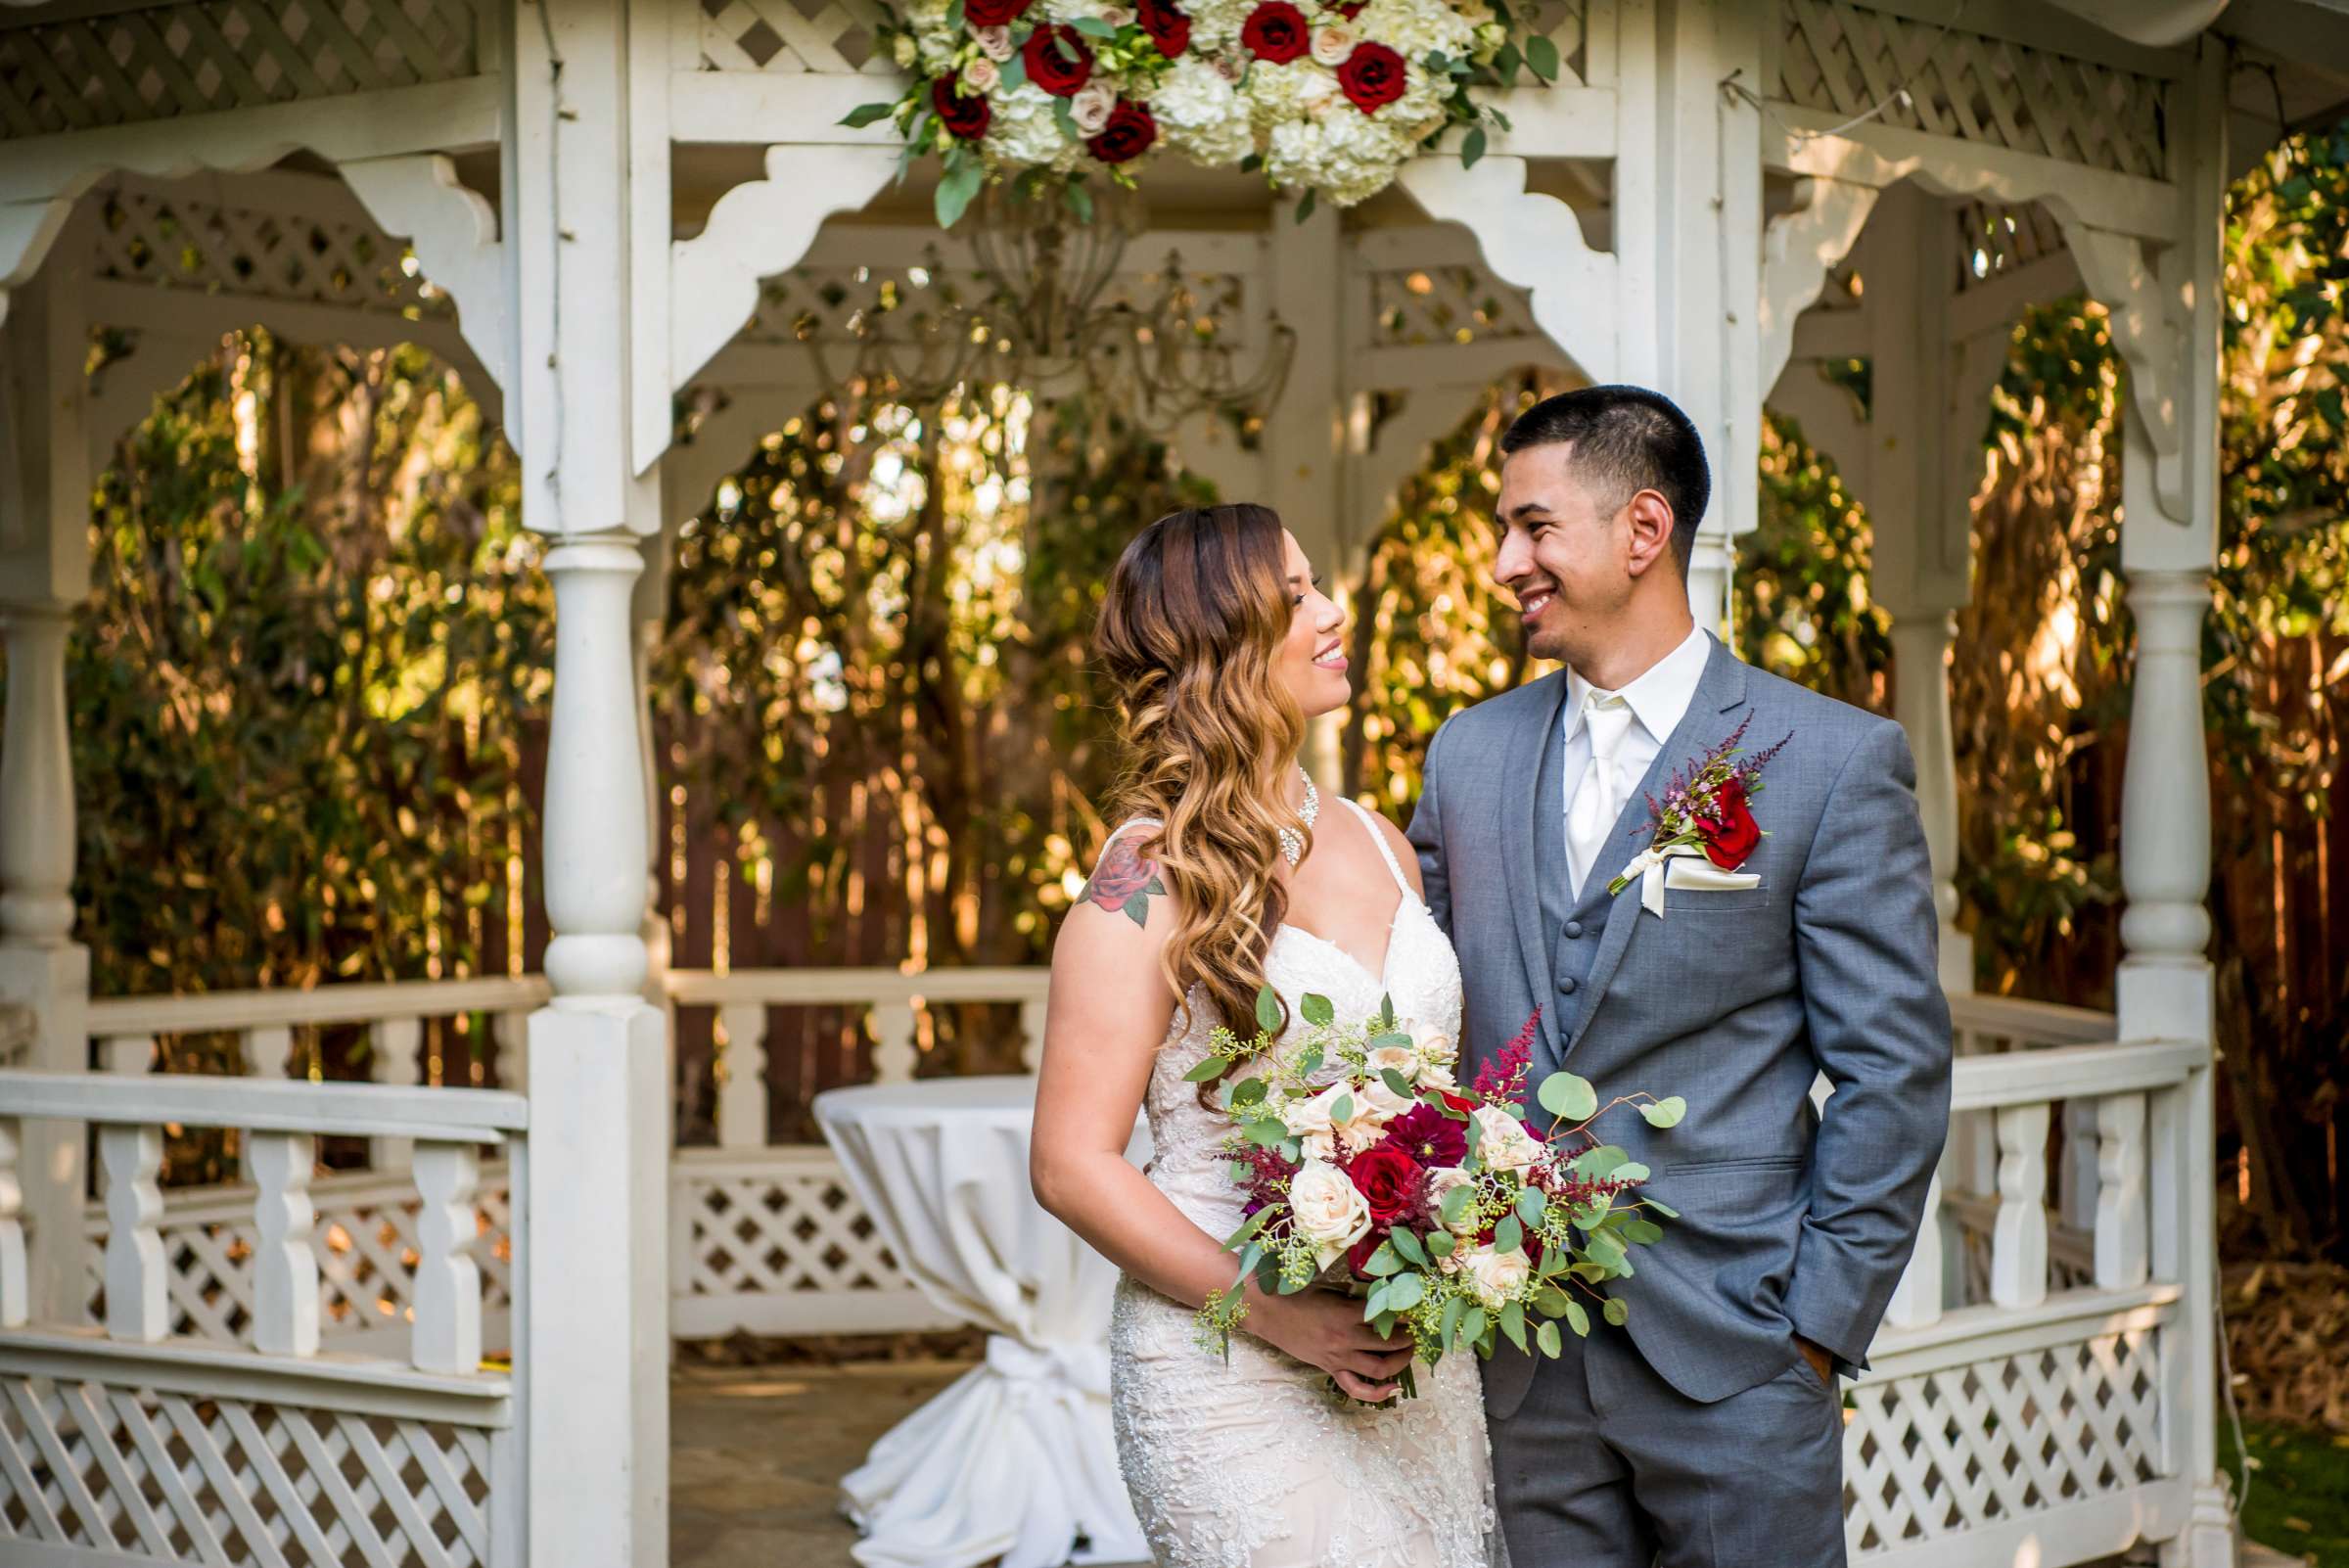 Twin Oaks House & Gardens Wedding Estate Wedding, Merrilynn and Trey Wedding Photo #104 by True Photography